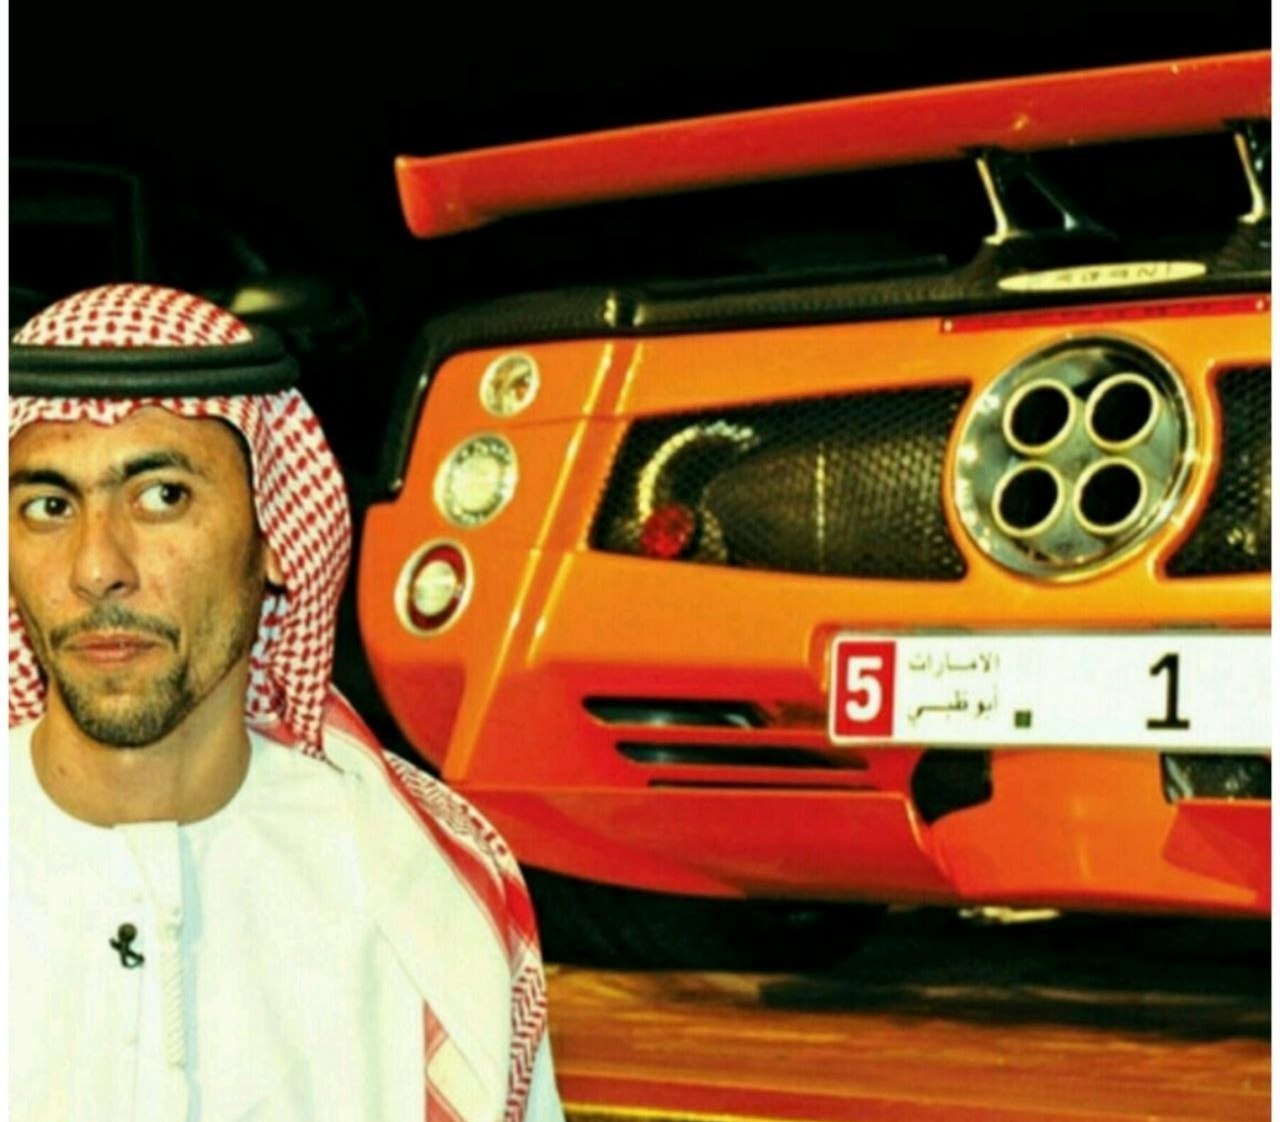 پلاک ماشینی در دبی که از خودِ خودرو گرانتر است!